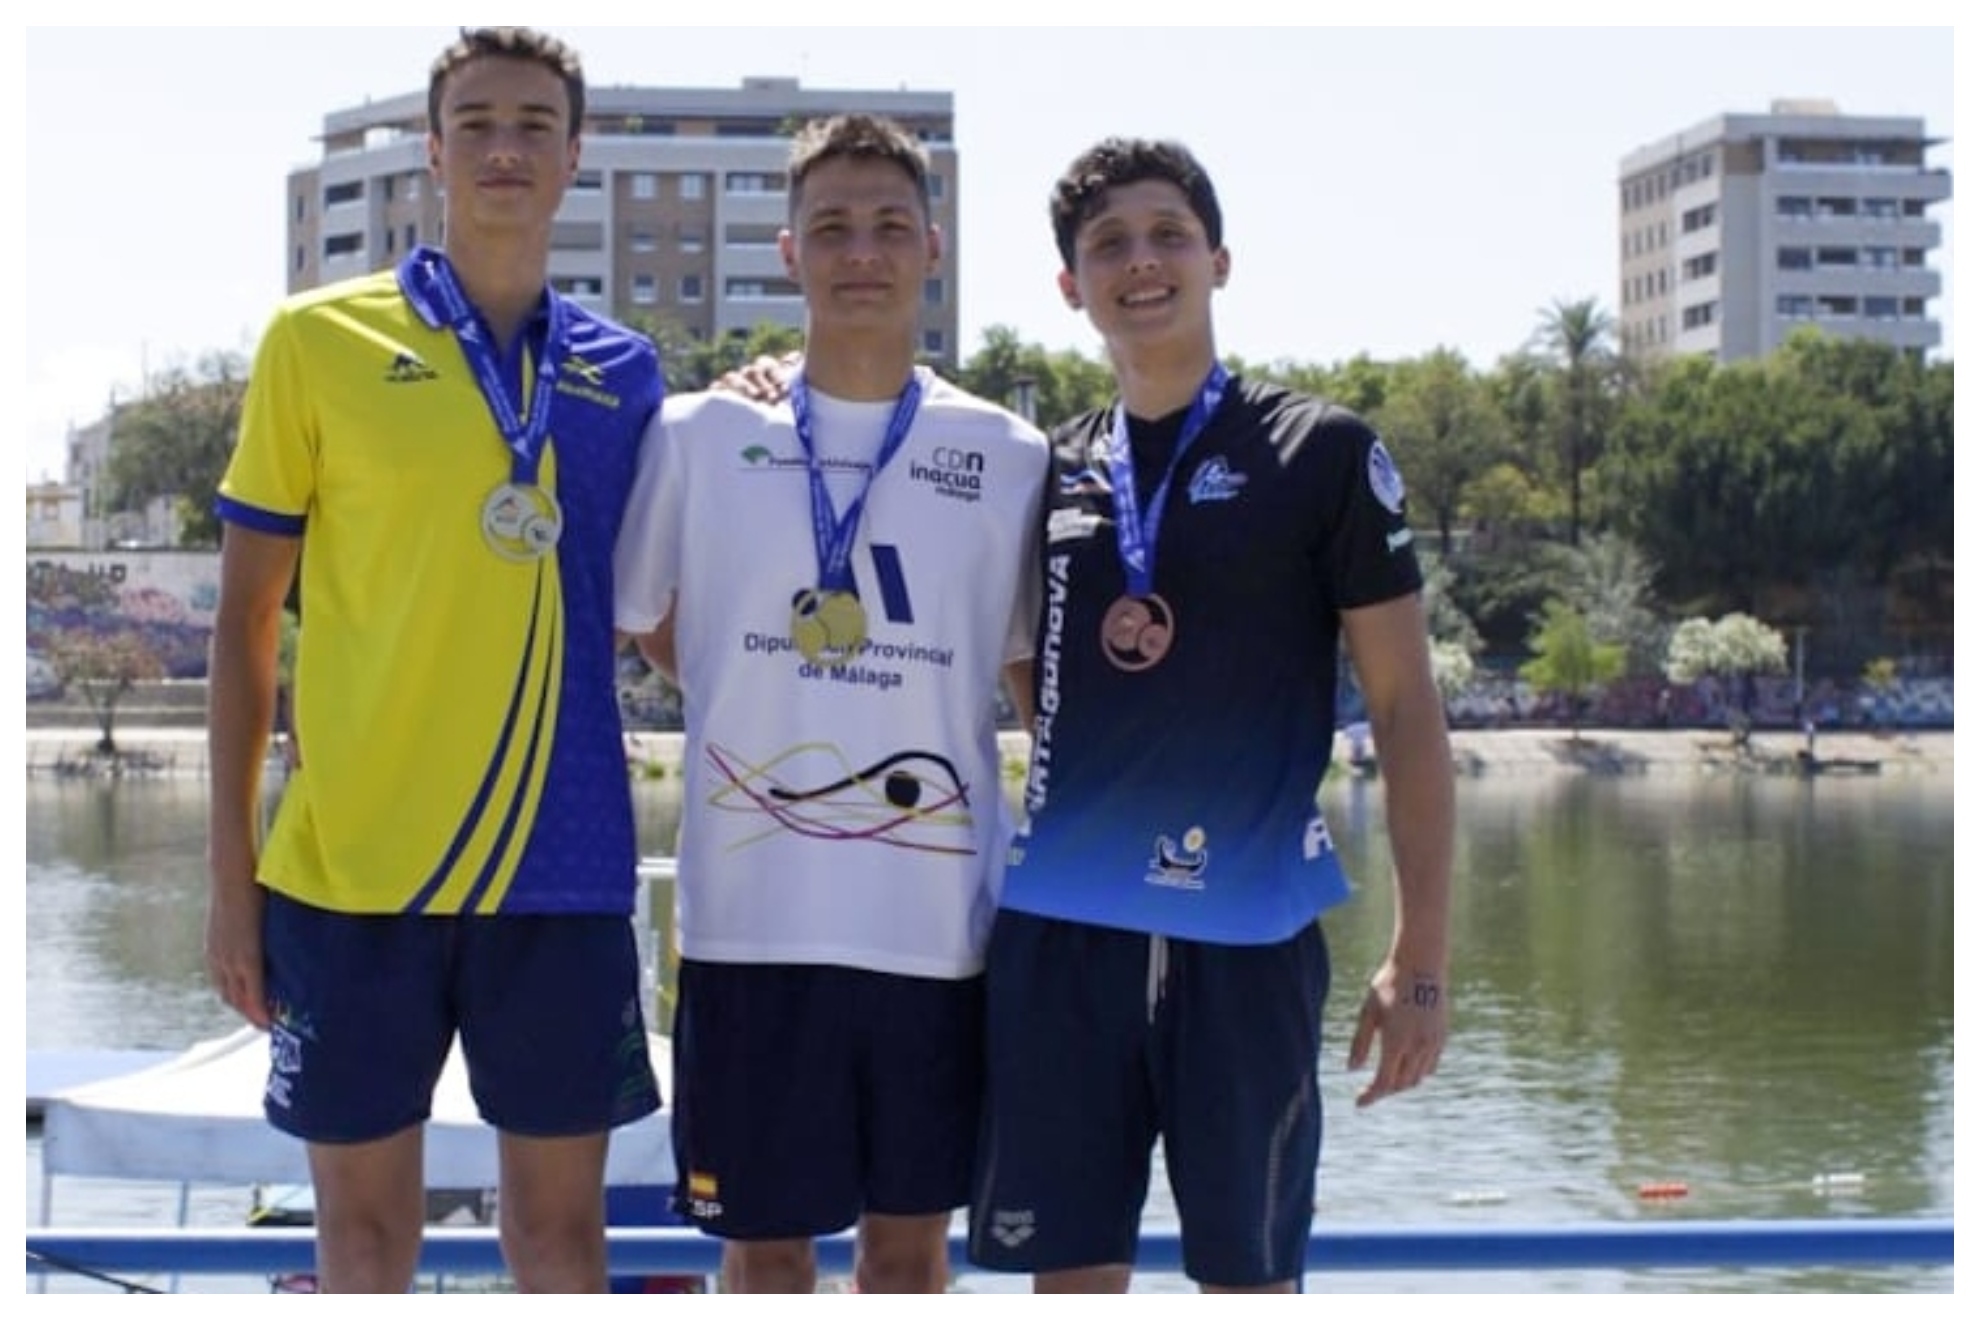 Carlos de Oña, en el centro, ganador de los 5 km el pasado sábado en los Nacionales de aguas abiertas